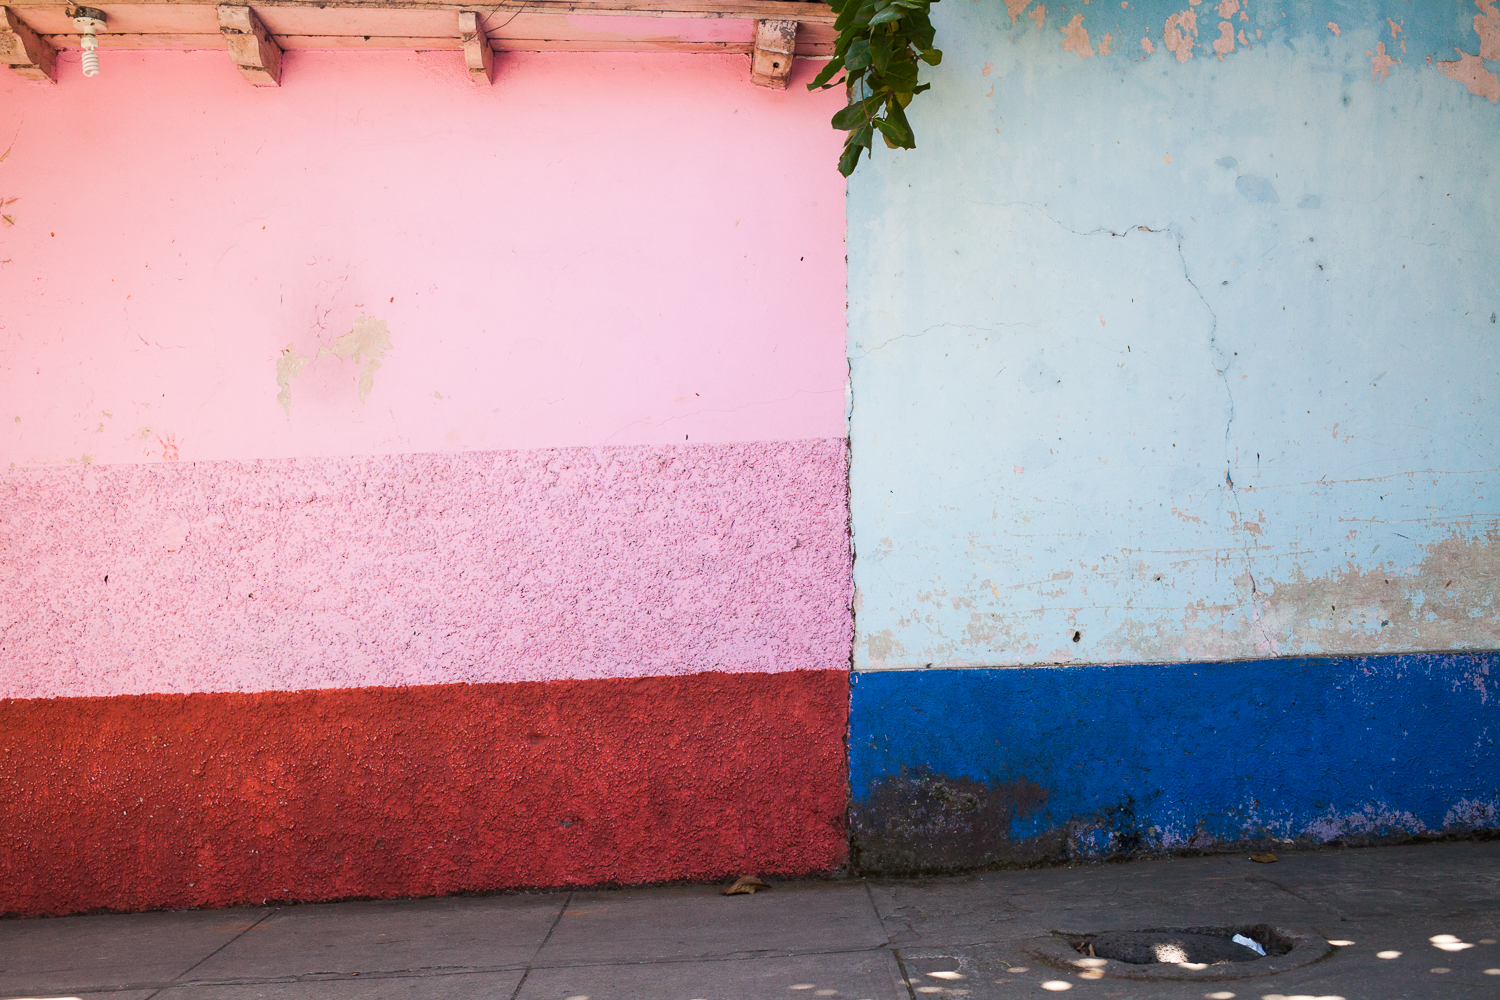 Colorful buildings in El Salvador